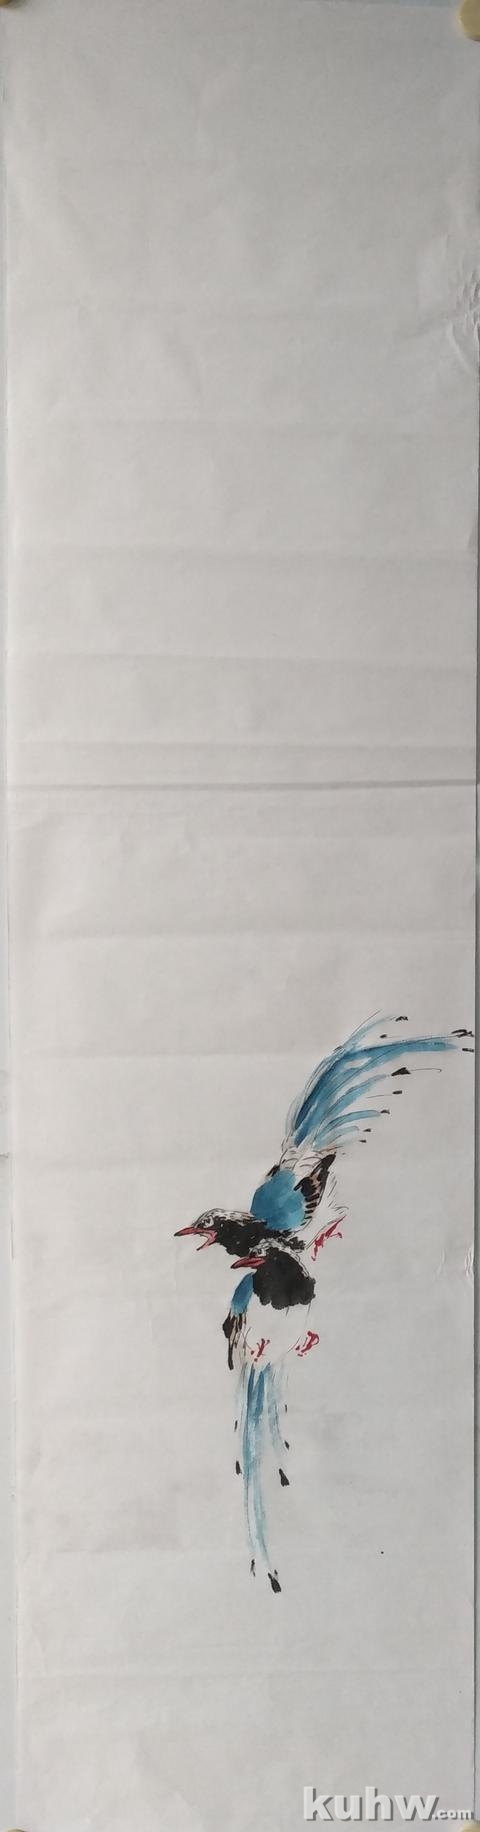 《盛续春光识紫藤》——红嘴蓝鹊和紫藤的画法